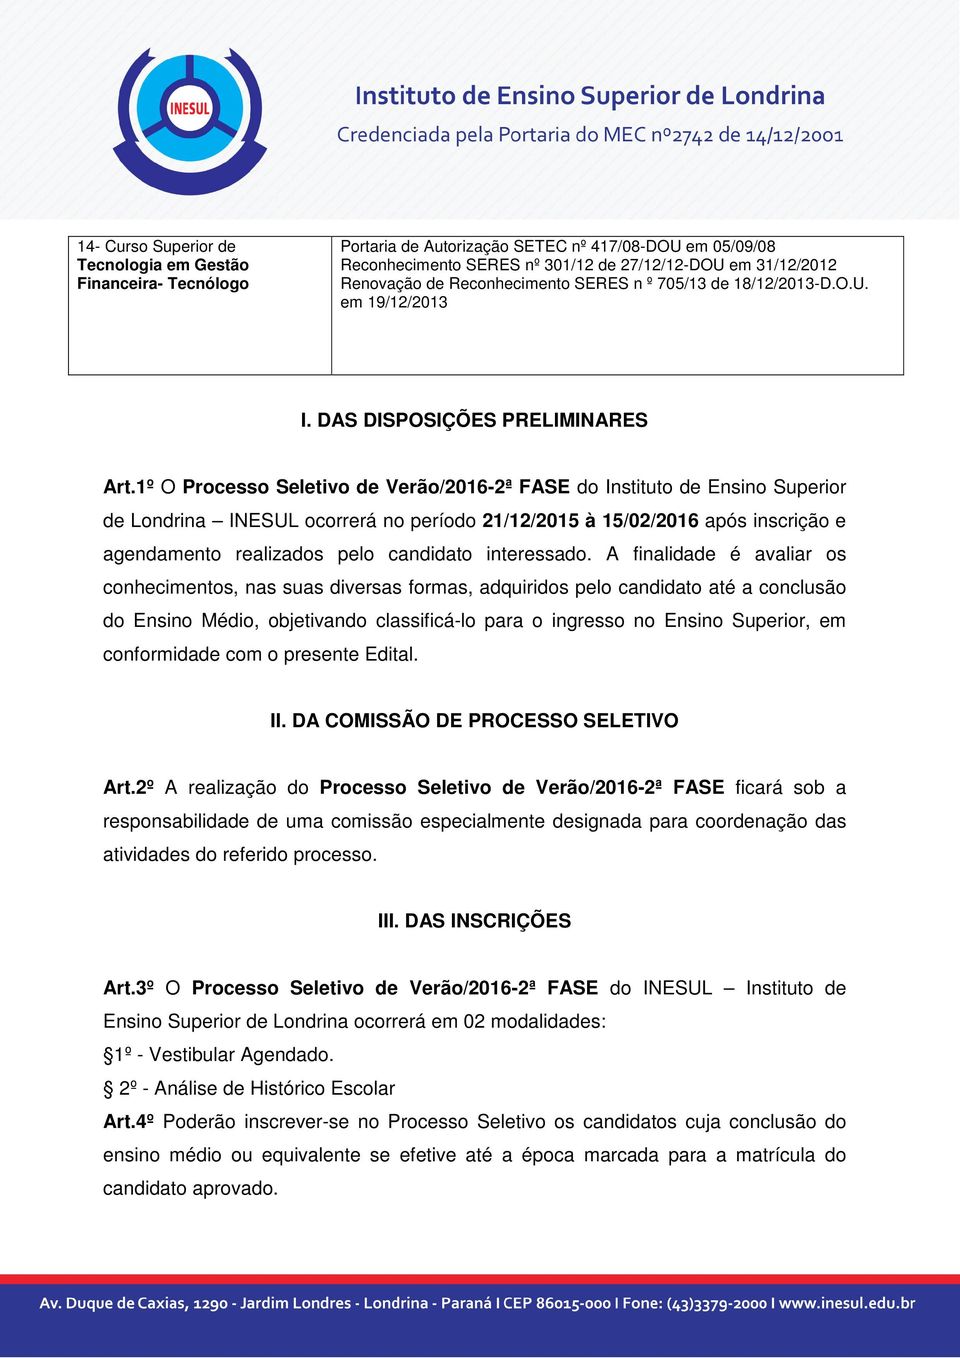 1º O Processo Seletivo de Verão/2016-2ª FASE do Instituto de Ensino Superior de Londrina INESUL ocorrerá no período 21/12/2015 à 15/02/2016 após inscrição e agendamento realizados pelo candidato